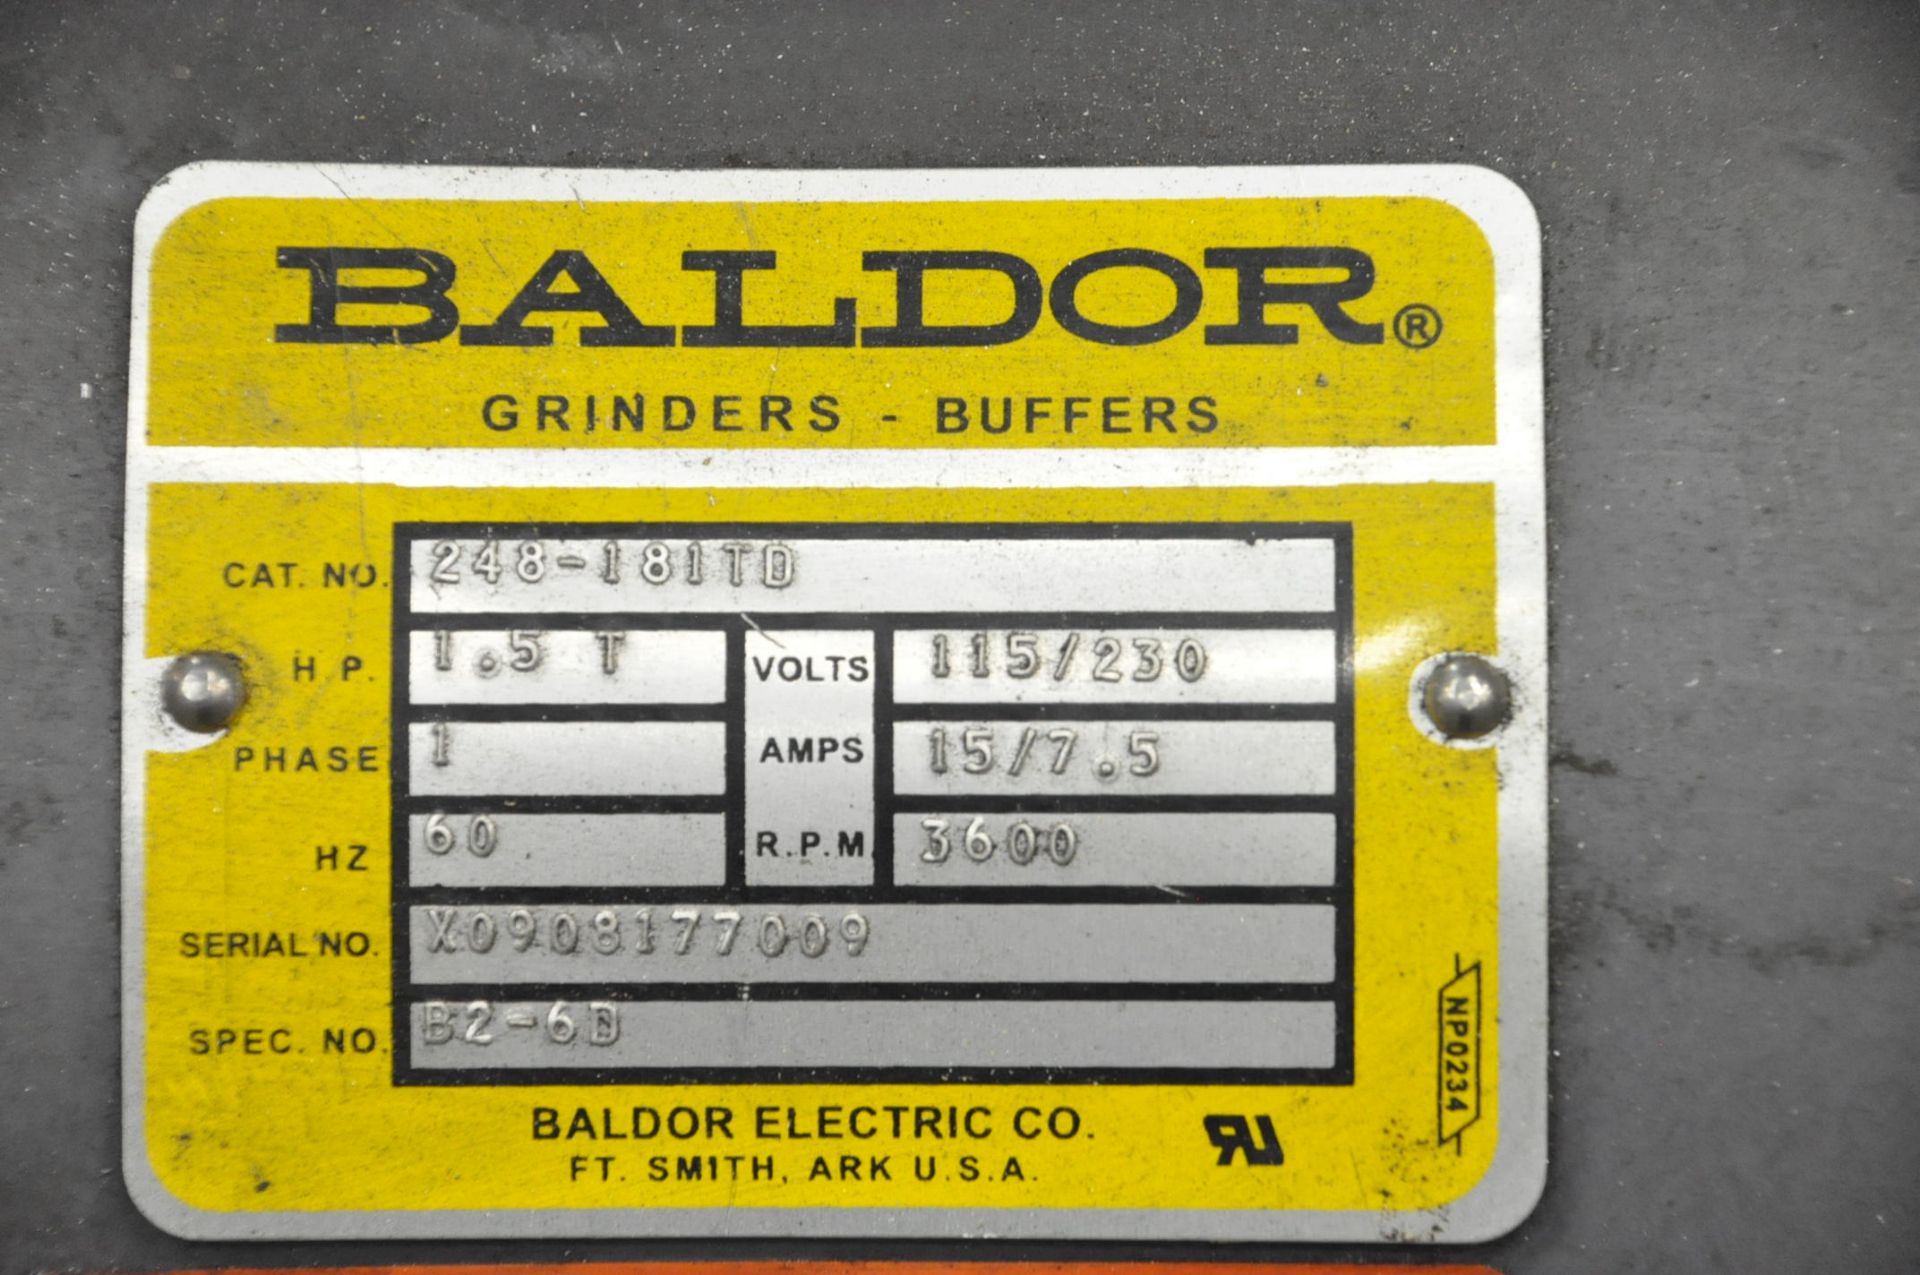 Baldor 248-181TD, Double End Wire Wheel/2" Vertical Belt Sander, - Image 2 of 2